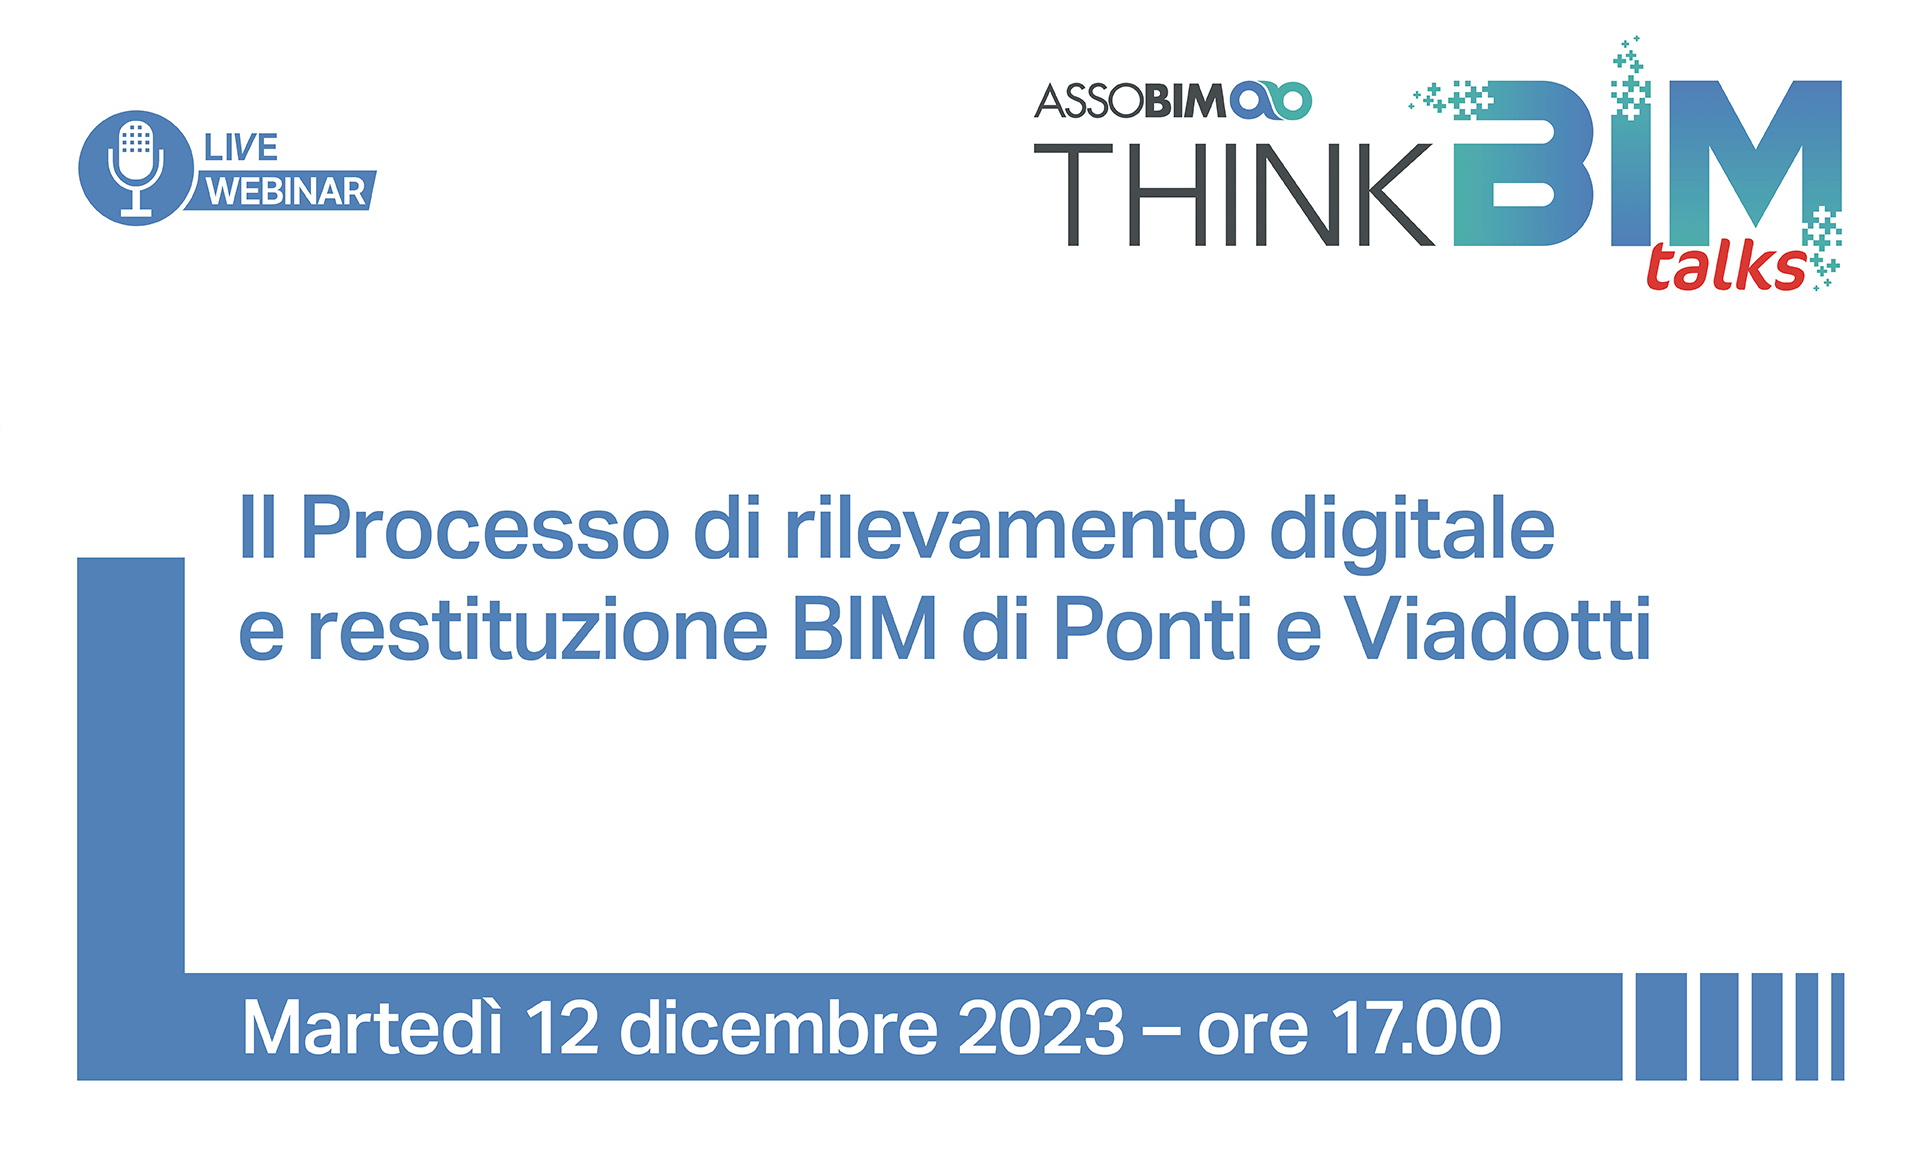 Talks 12 dicembre 2023 – Il Processo di rilevamento digitale e restituzione BIM di Ponti e Viadotti